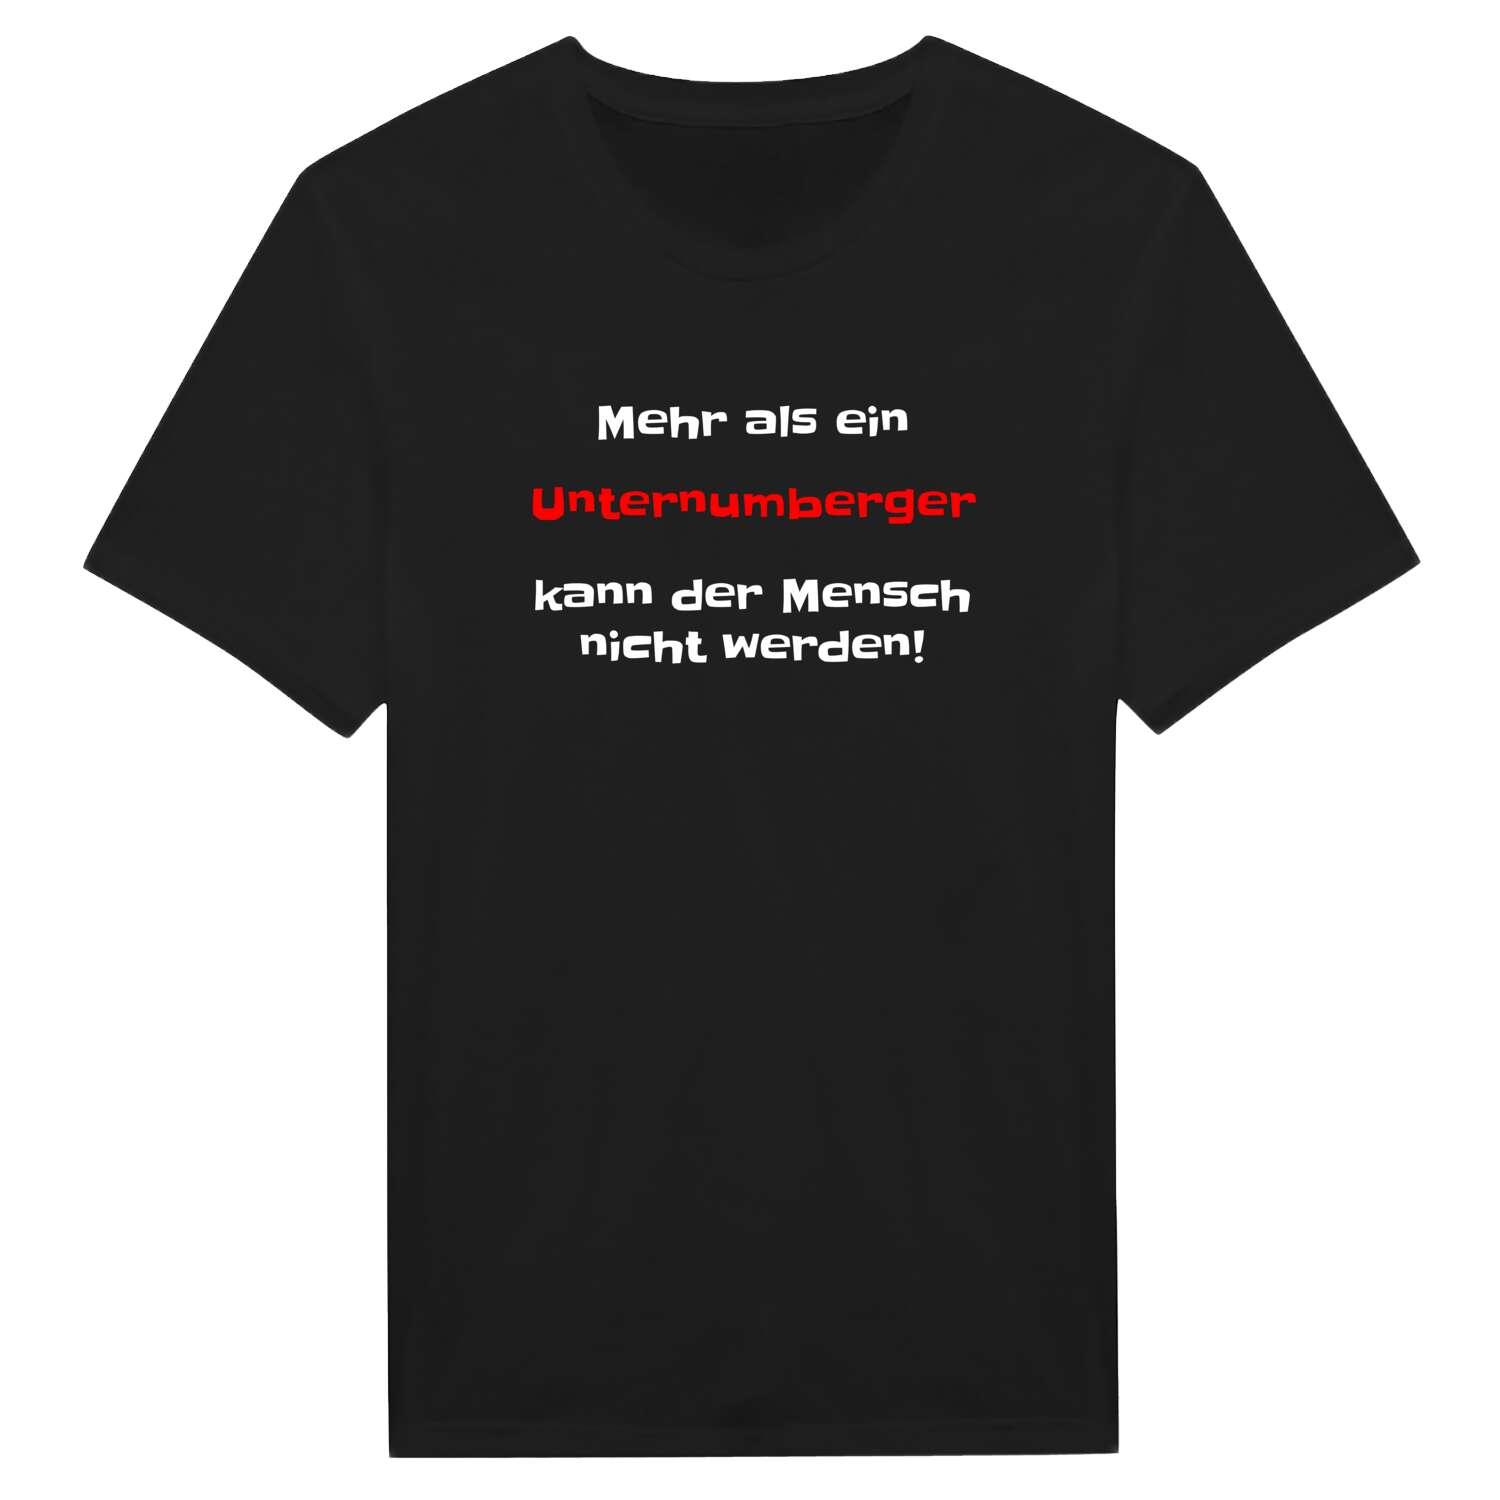 Unternumberg T-Shirt »Mehr als ein«